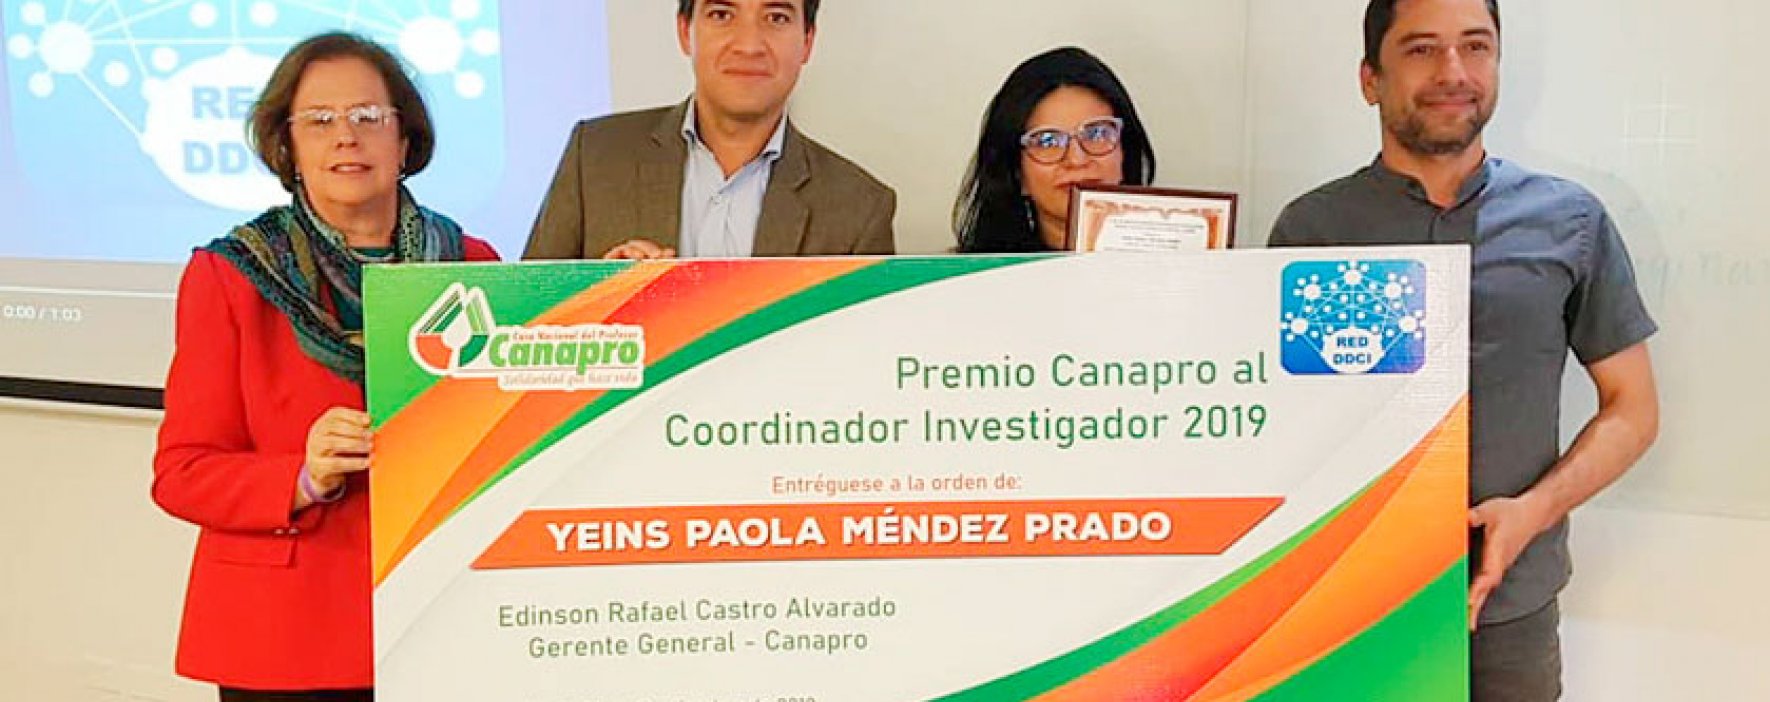 Premio Canapro al Coordinador Investigador 2019